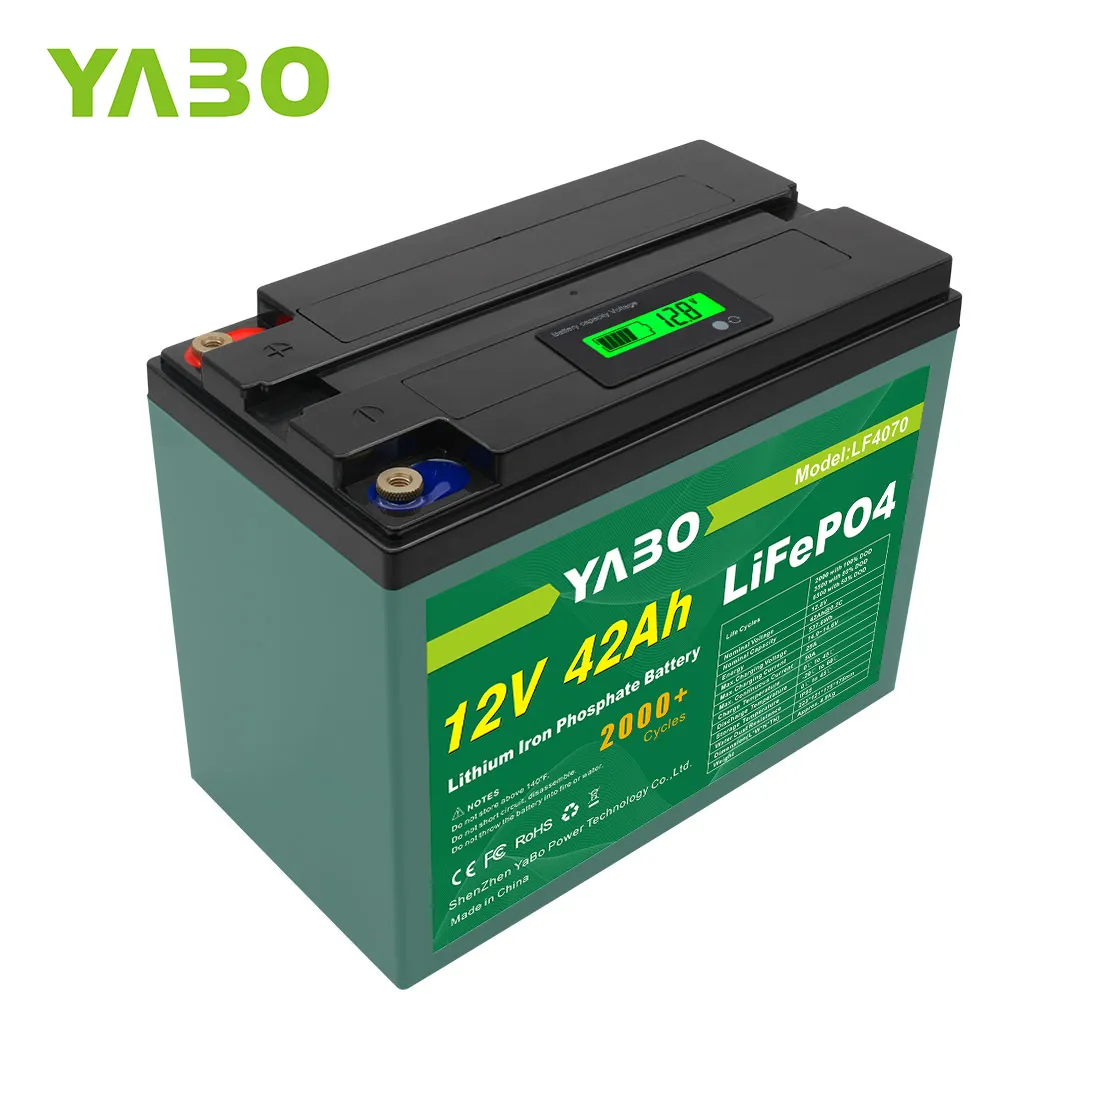 YaBoバッテリーファクトリー12v40ahリチウムイオンバッテリー充電式40ahLifepo4セル、12vUPSバッテリー